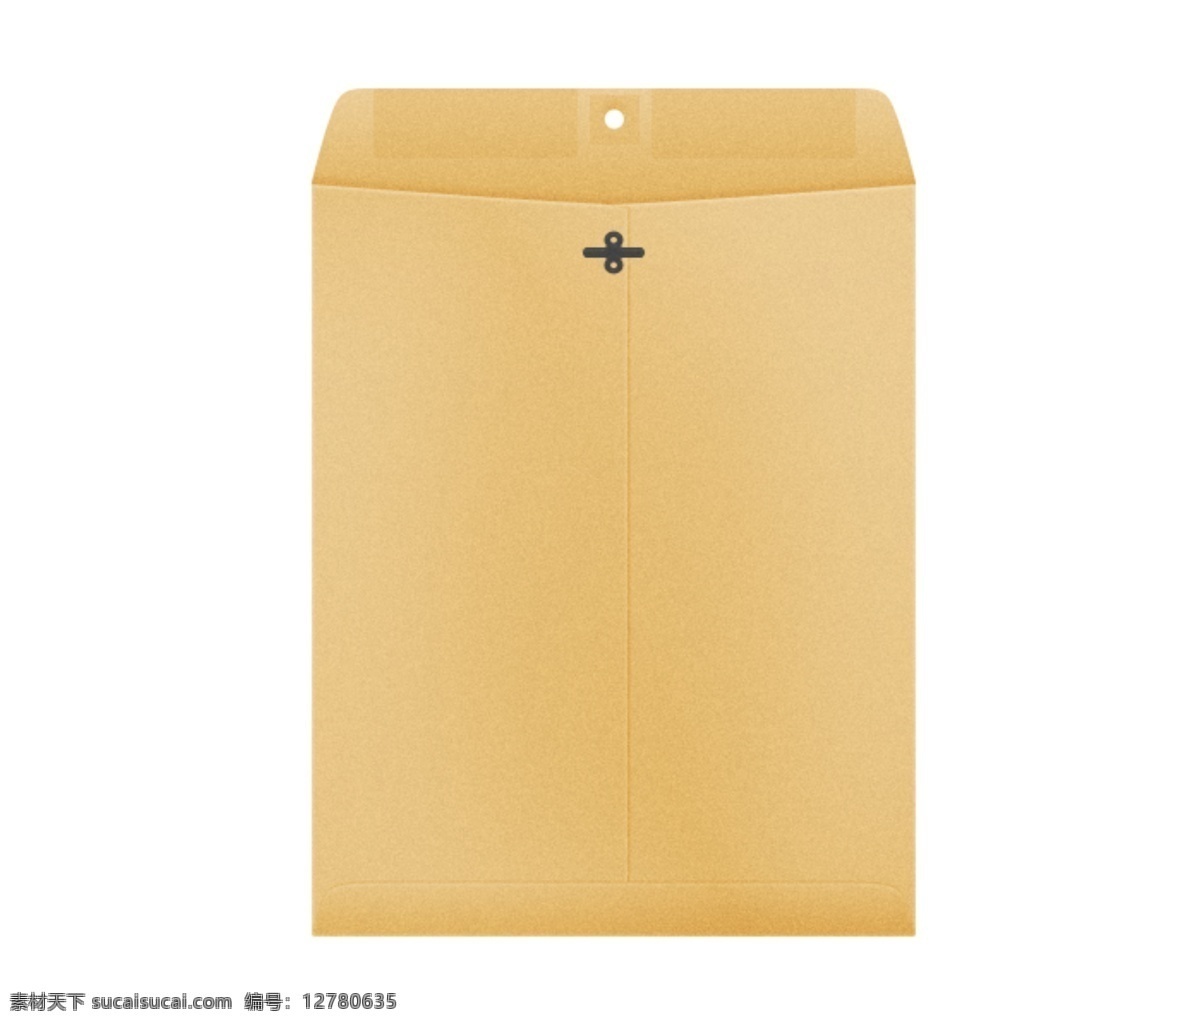 空白档案袋 档案袋 文件袋 黄色 可扣住 大号的 ps 信封 资料档案袋 公司文件袋 分层